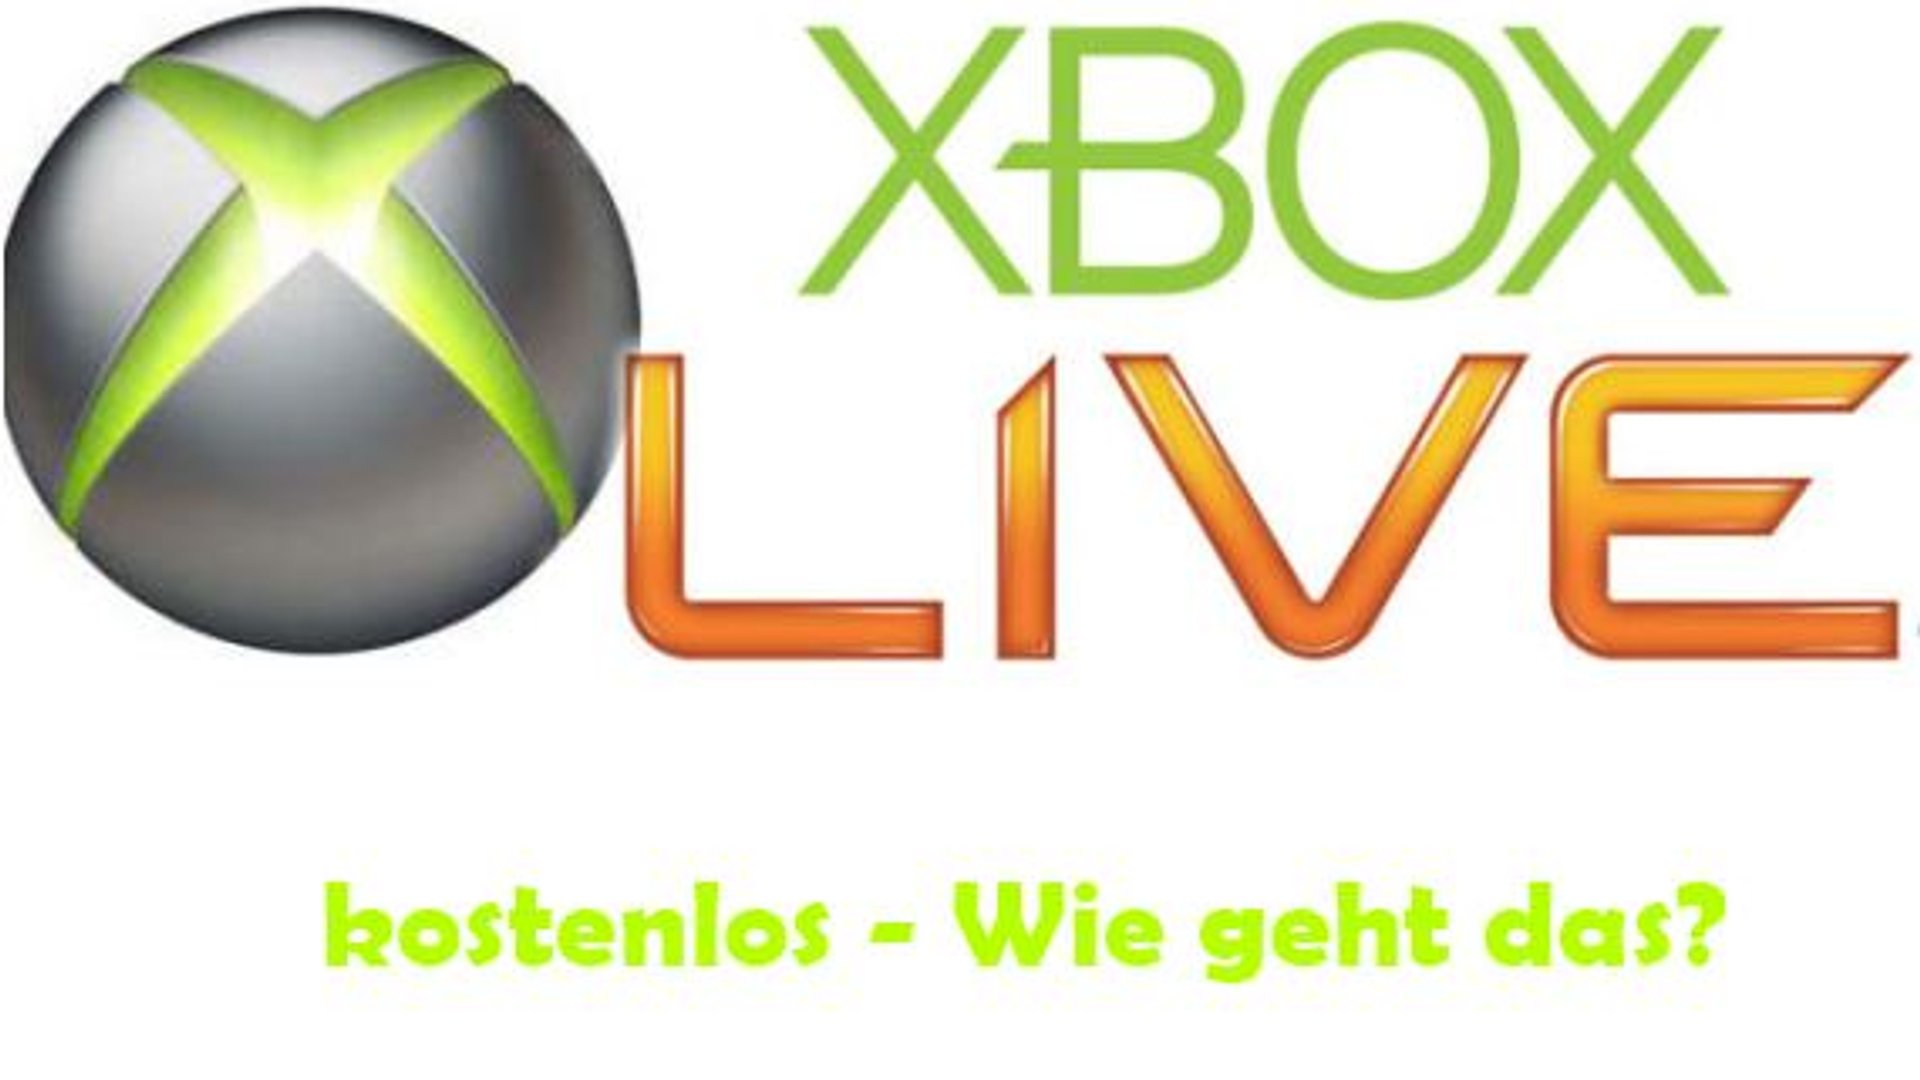 Xbox live gold kostenlos code deutsch 2018